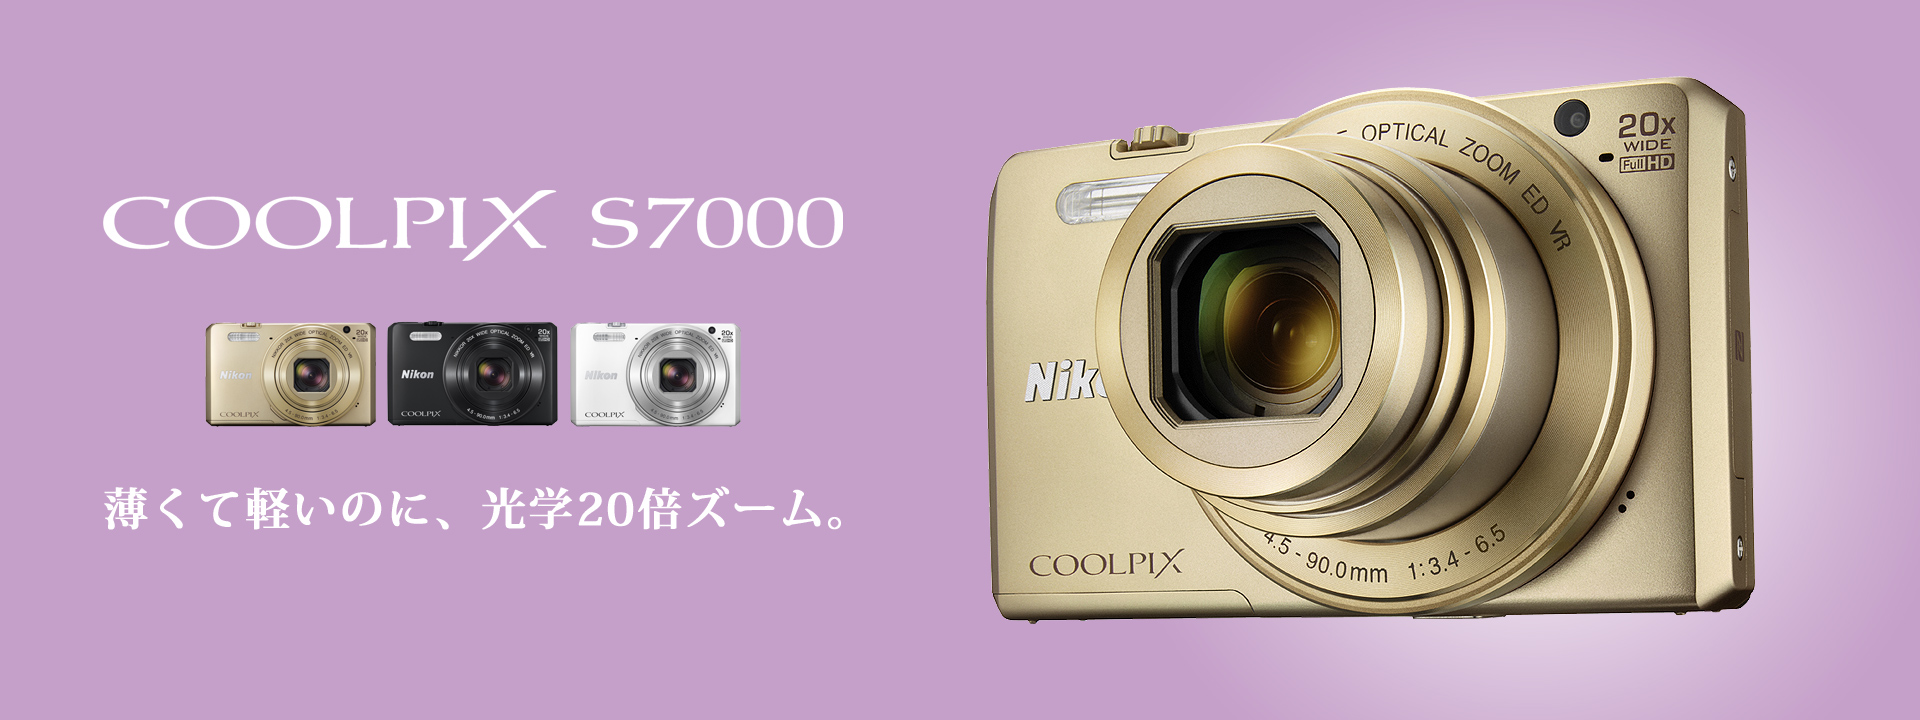 ニコン COOLPIX クールピクス S7000 コデジ